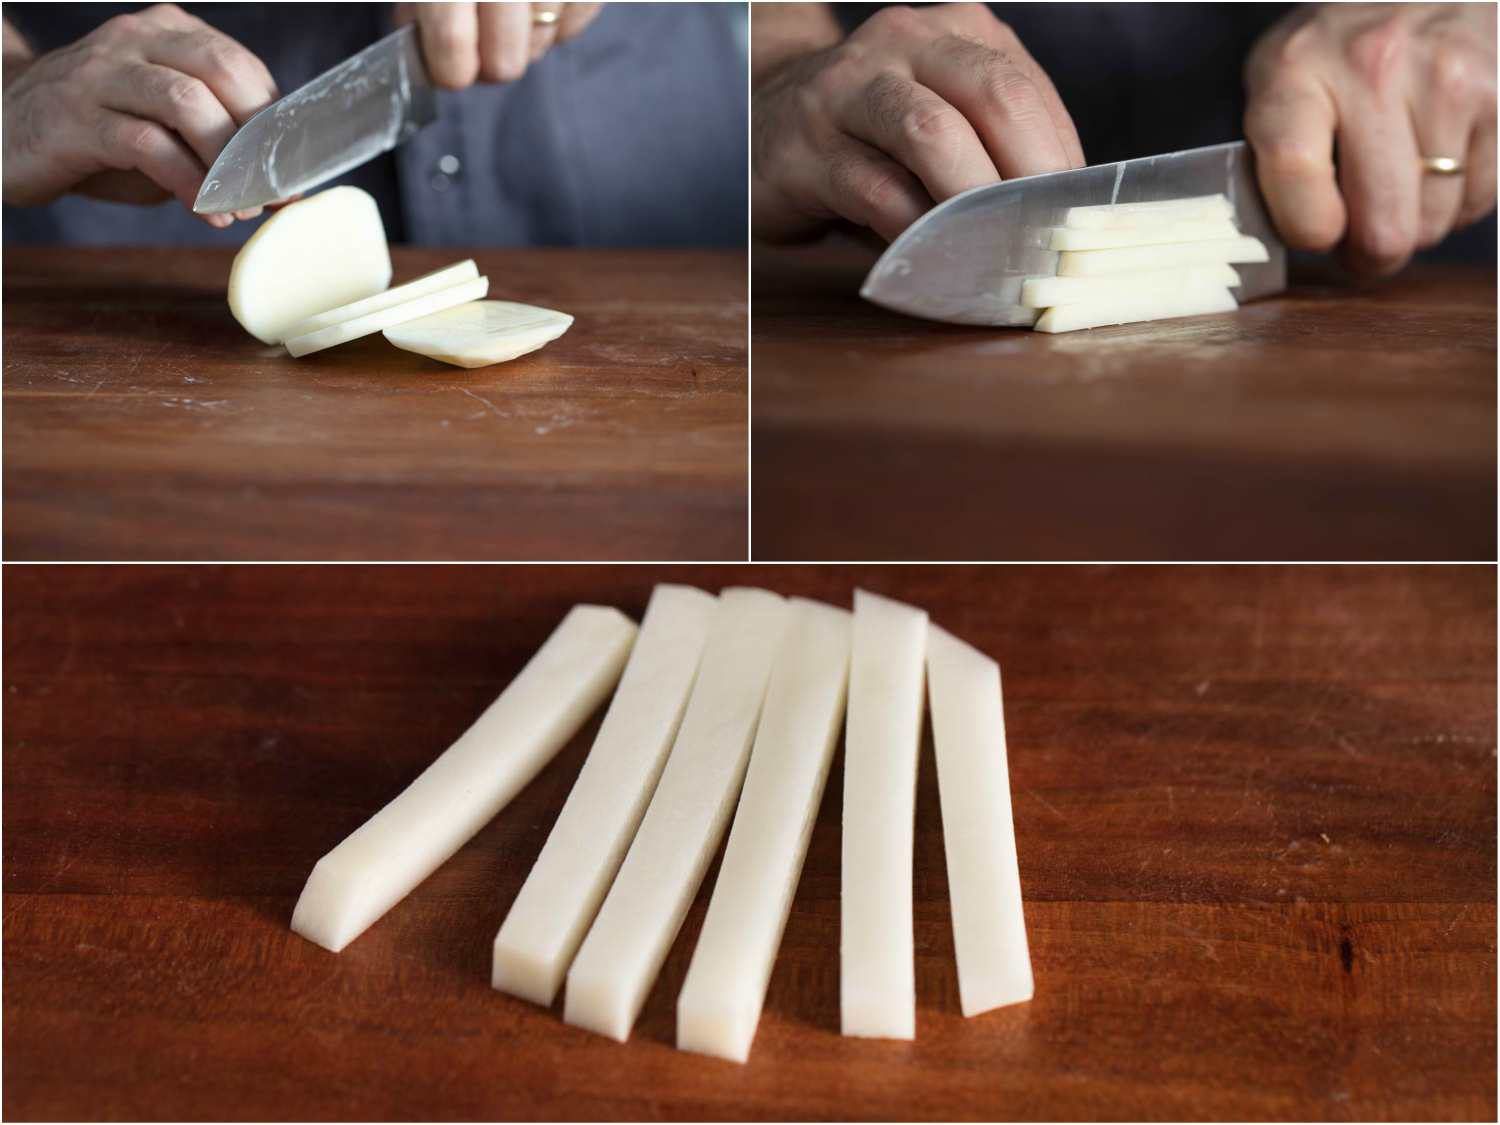 处理用一把刀切炸薯条土豆条的照片:切片，切成条，成品棒